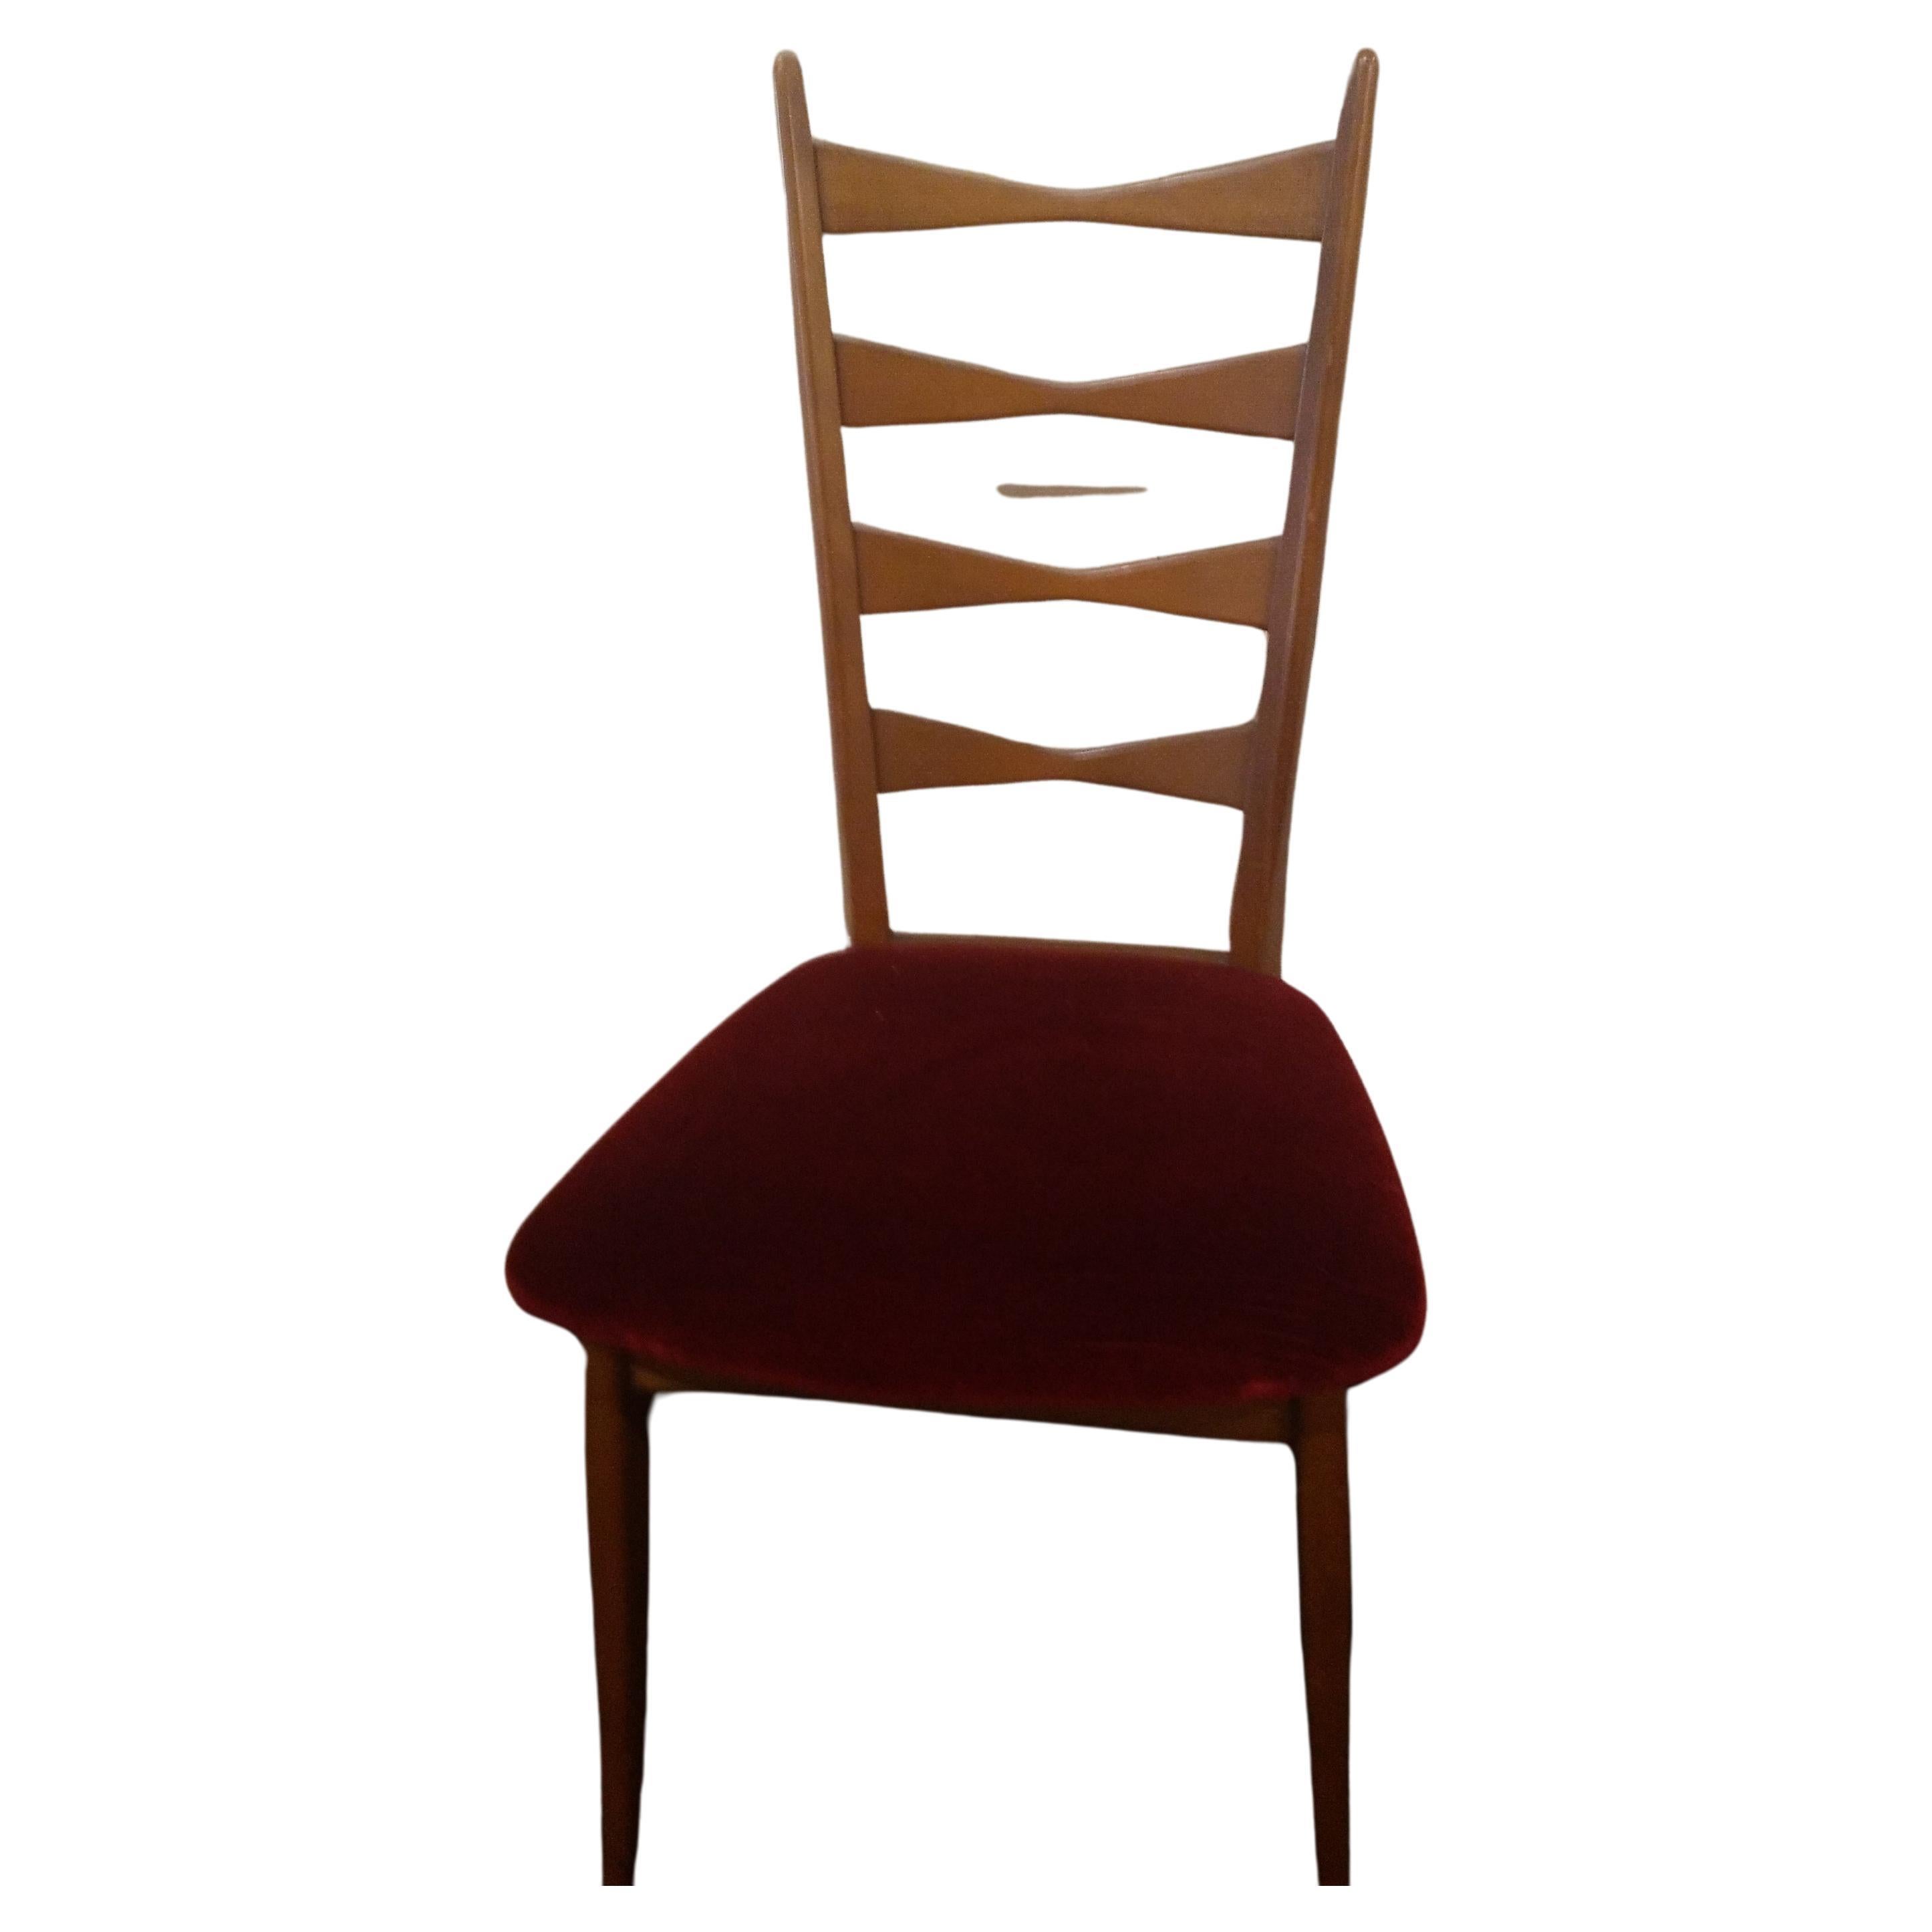 4 Sedie mid-century modern ,danesi ,originali in ogni loro parte, ,hanno lo schienale alto ,sono in  legno chiaro , con la seduta in velluto originale rosso scuro . Queste sedie sono eleganti ed hanno stile.
Queste sedie hanno l'etichetta di